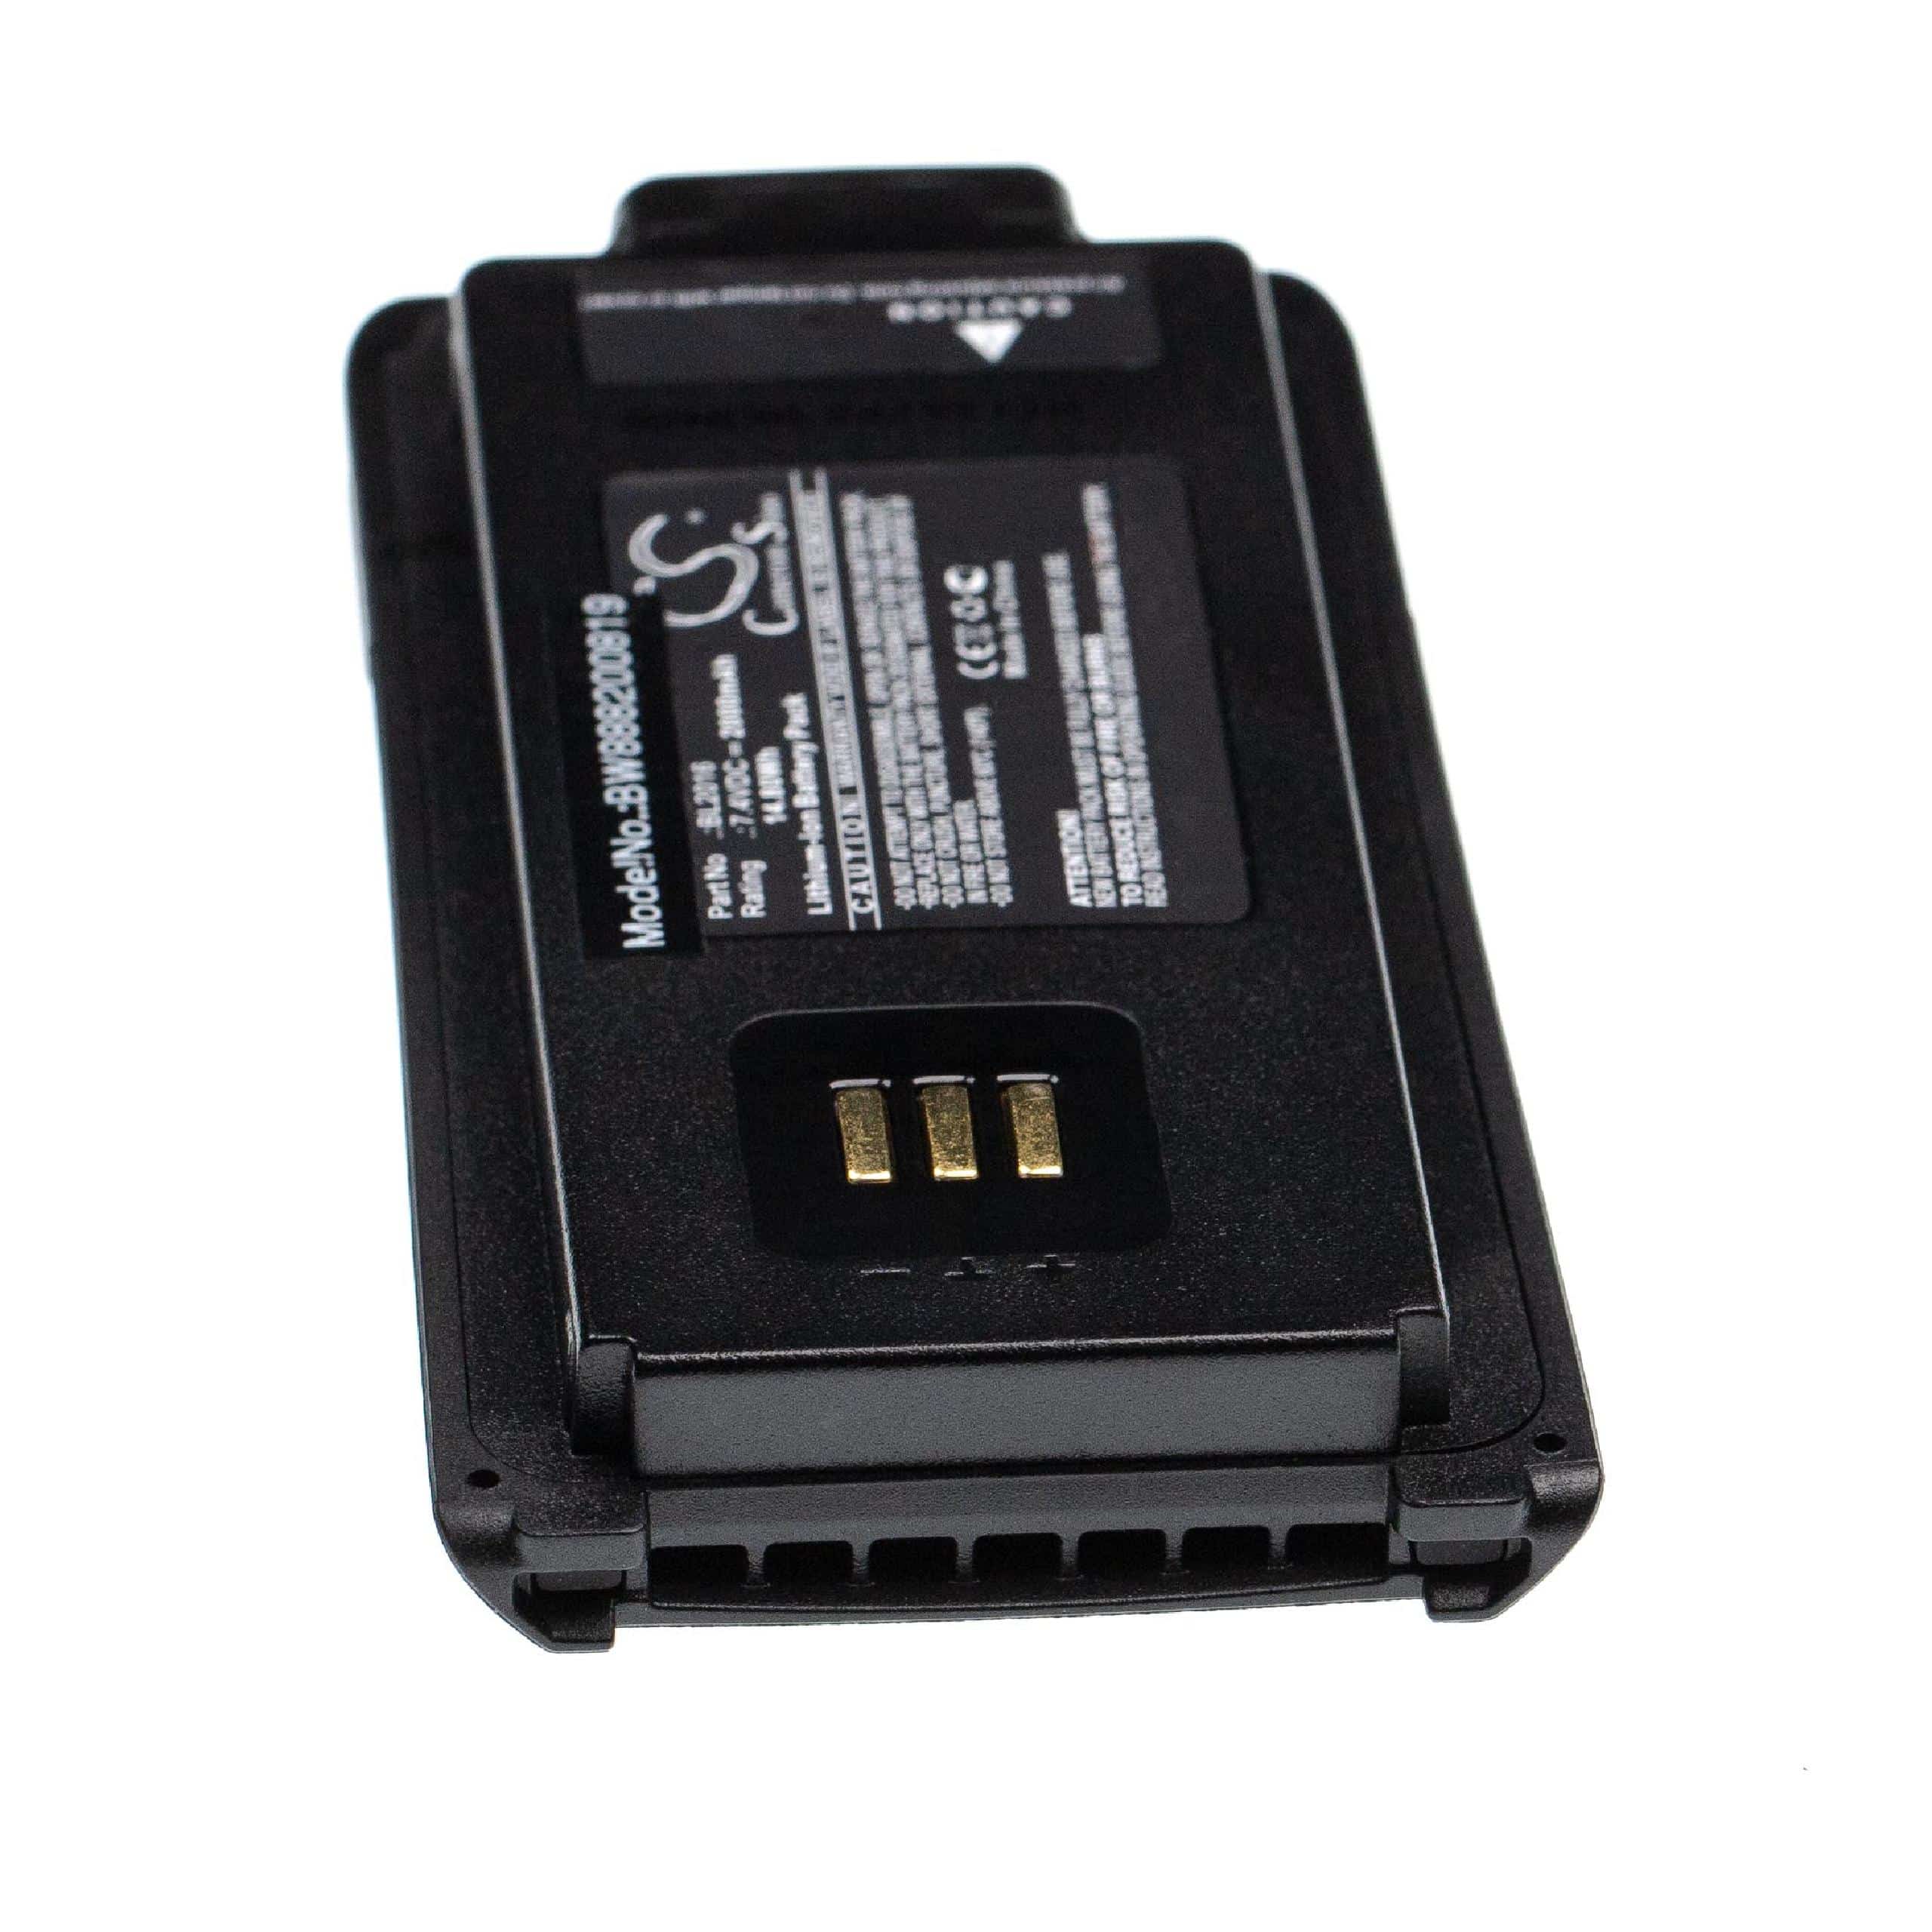 Batterie remplace Hytera BL2016, BL2015, BL3004, BL2509 pour radio talkie-walkie - 2000mAh 7,4V Li-ion